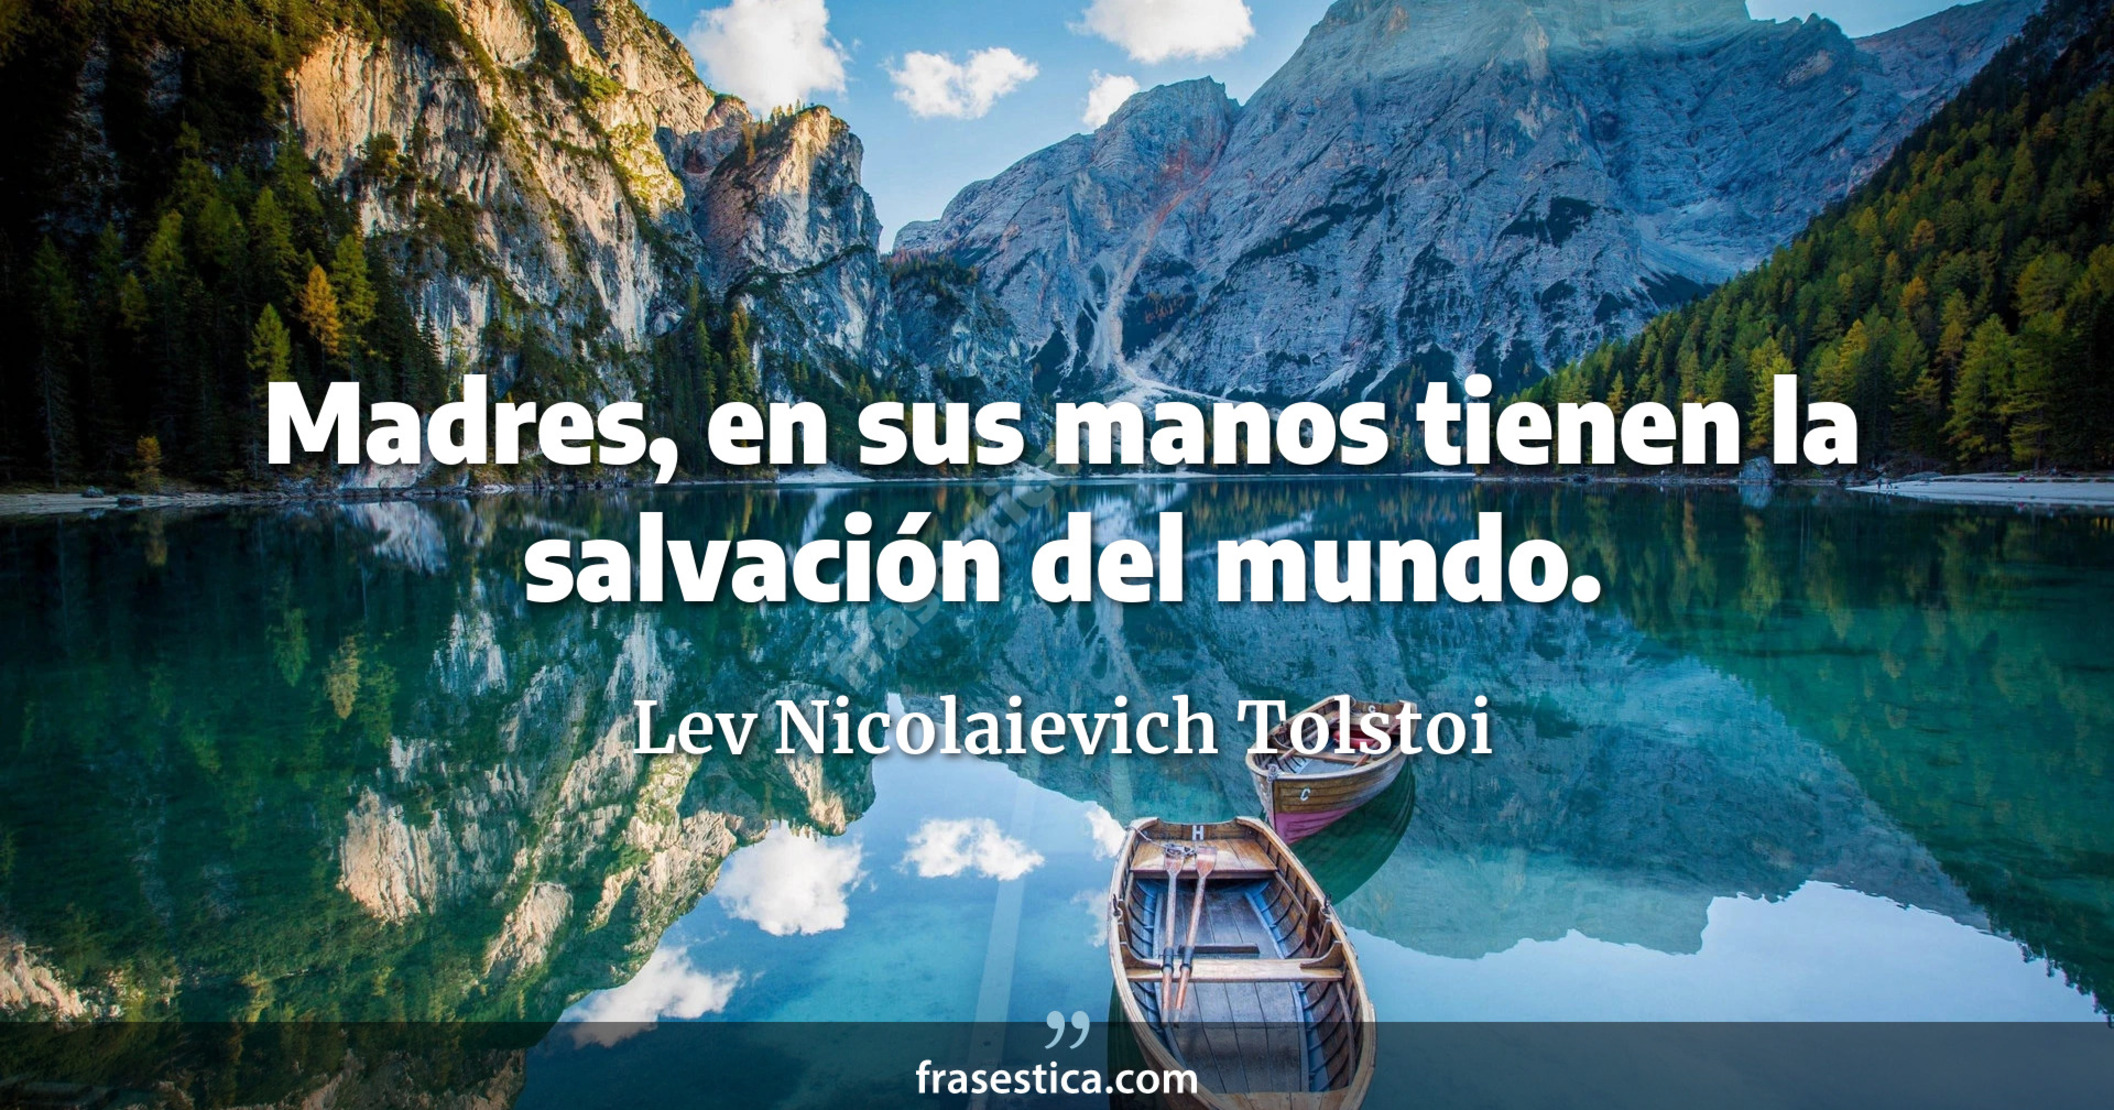 Madres, en sus manos tienen la salvación del mundo. - Lev Nicolaievich Tolstoi